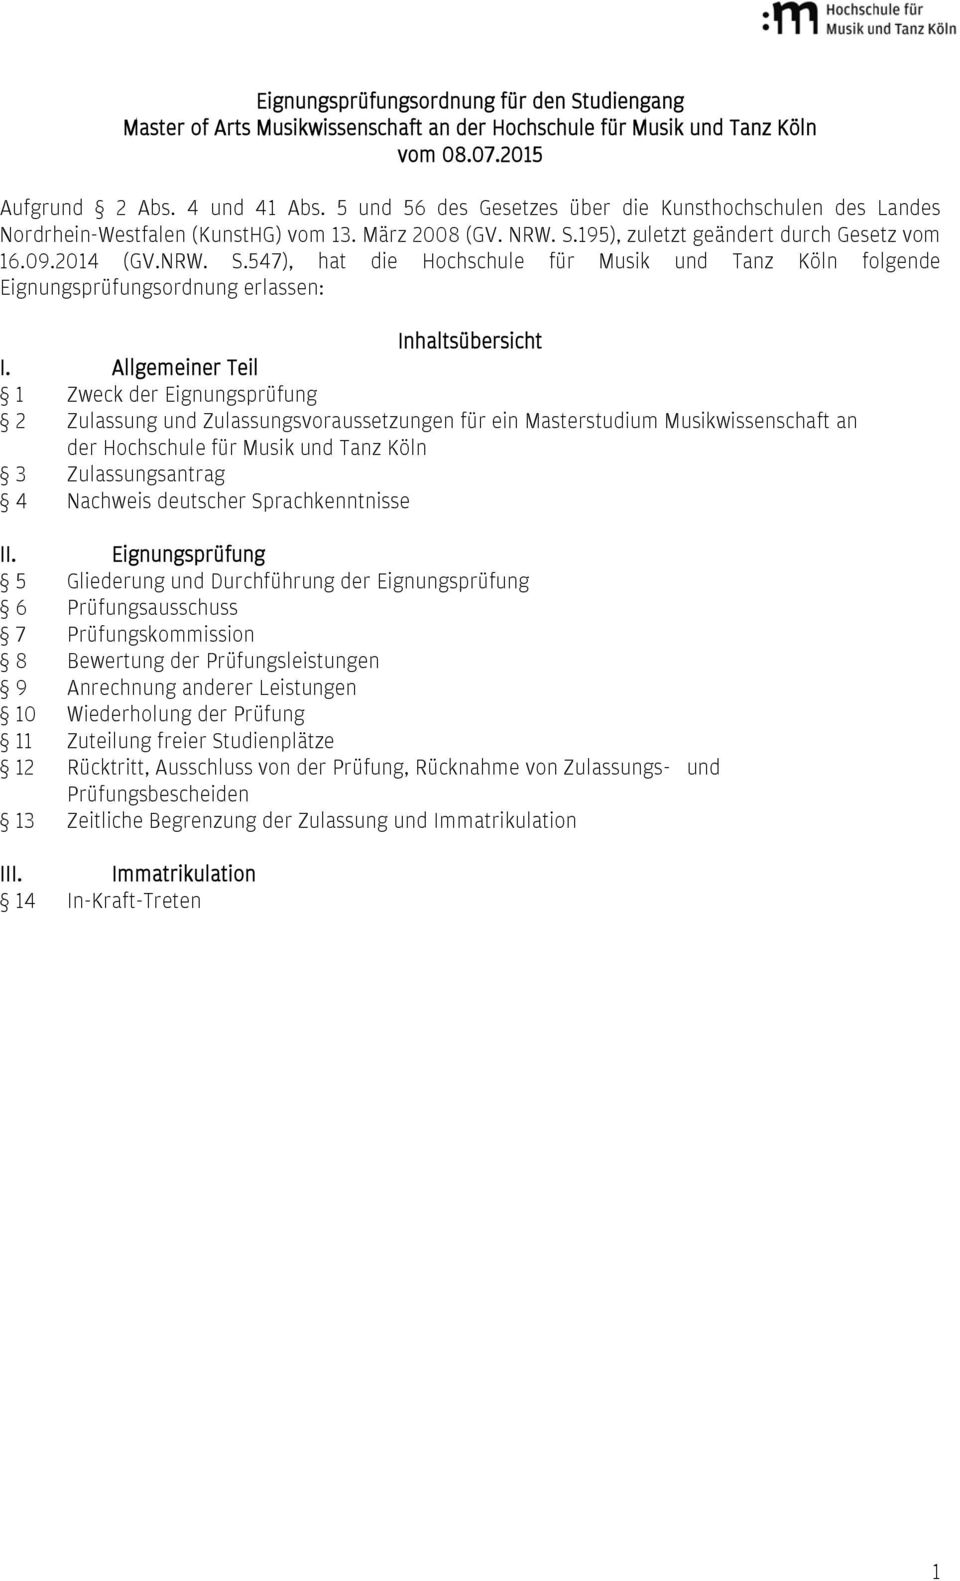 195), zuletzt geändert durch Gesetz vom 16.09.2014 (GV.NRW. S.547), hat die Hochschule für Musik und Tanz Köln folgende Eignungsprüfungsordnung erlassen: Inhaltsübersicht I.